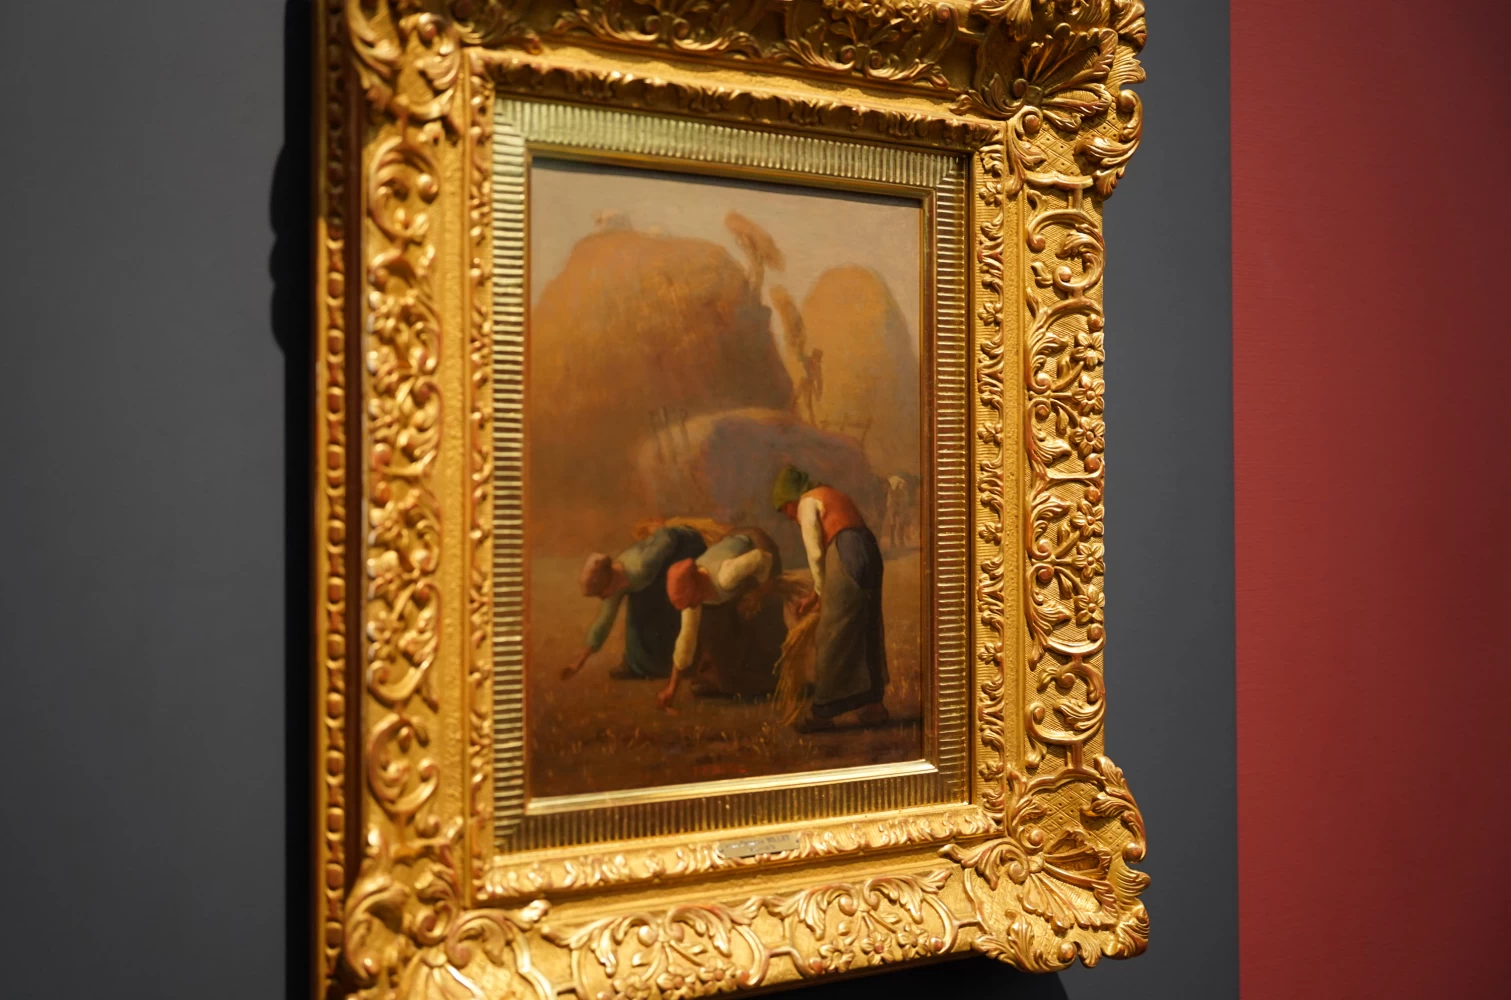 ジャン=フランソワ・ミレー《落ち穂拾い、夏》1853年  山梨県立美術館所蔵